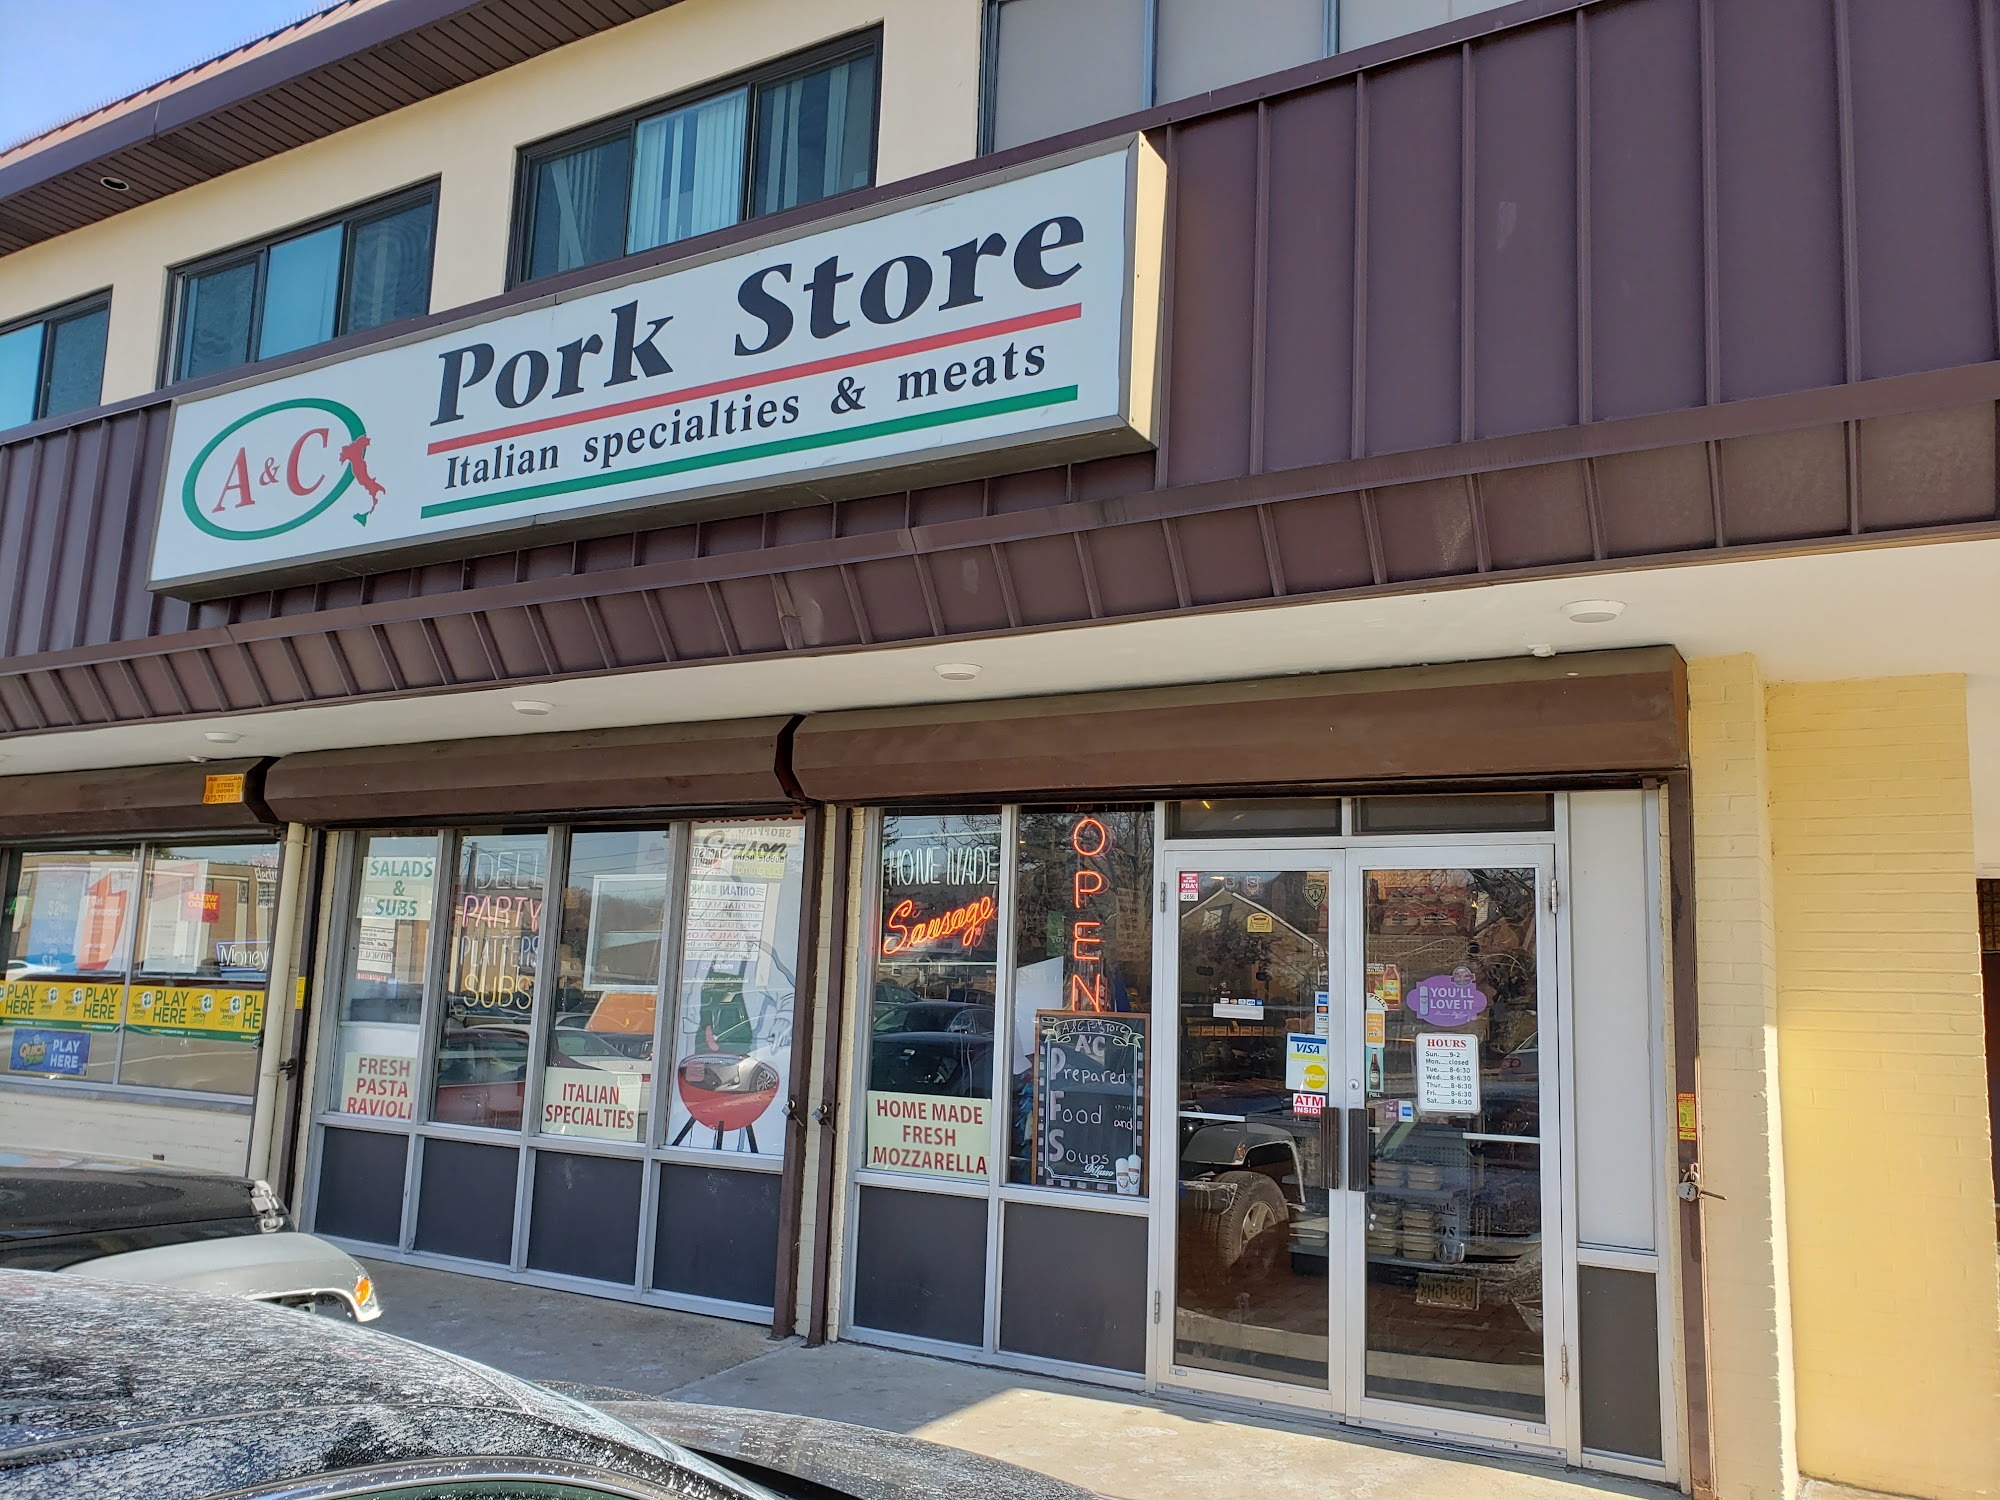 A & C Pork Store